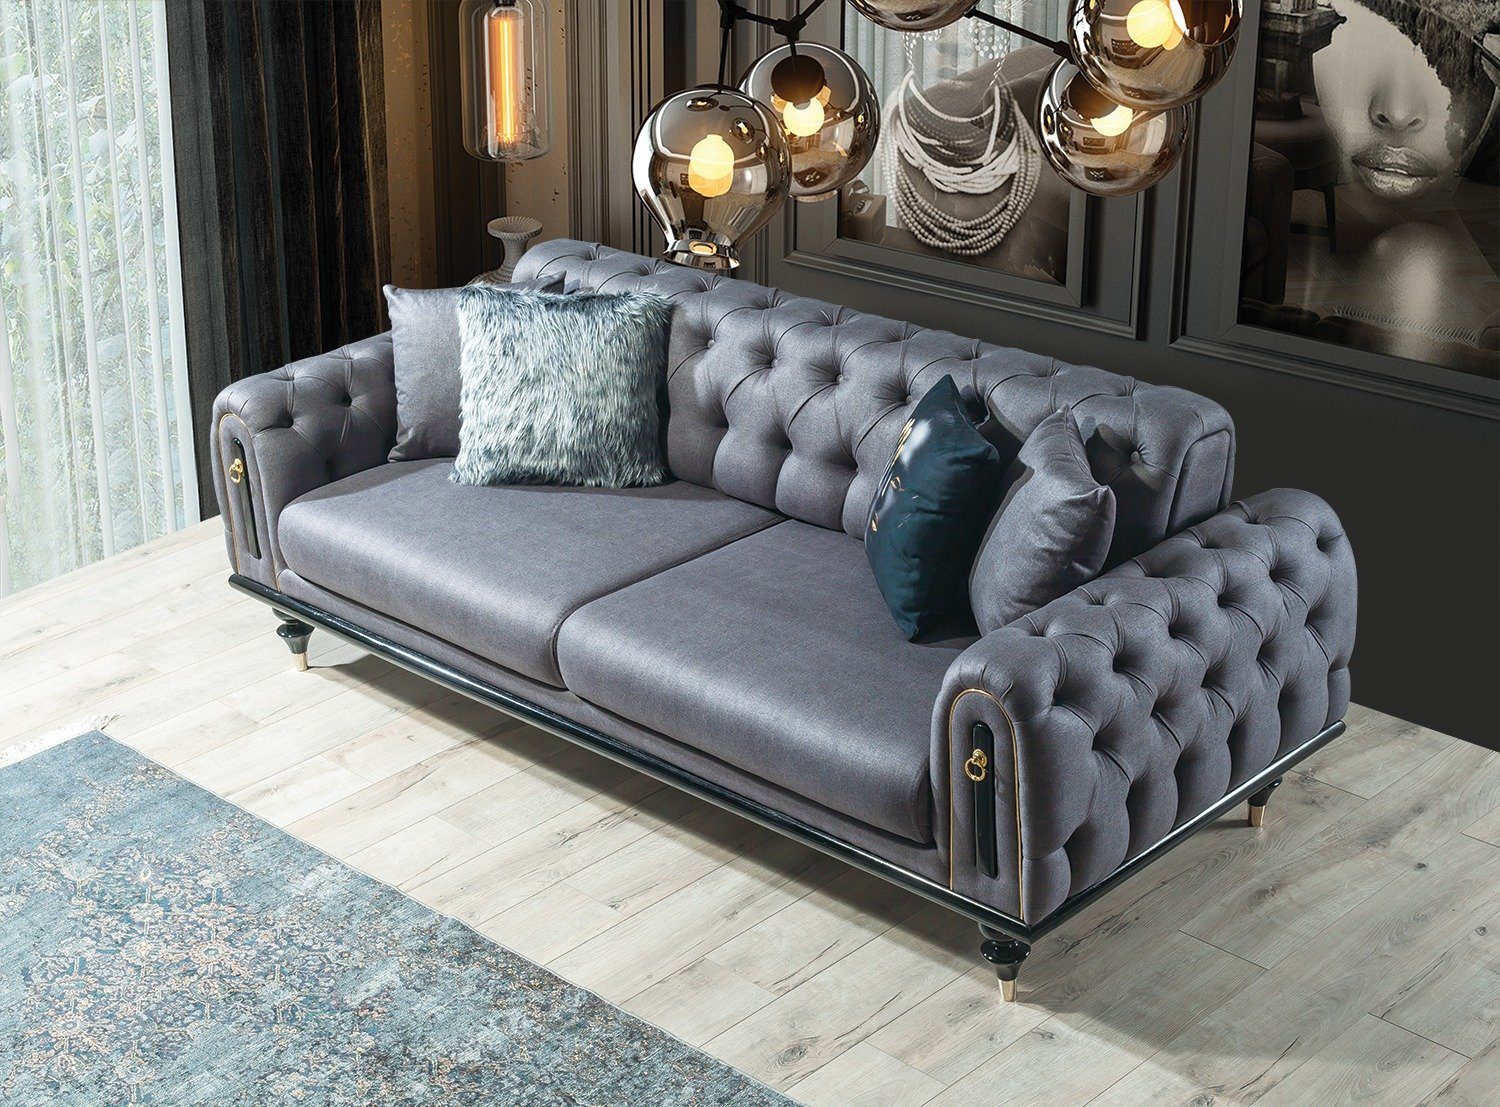 Polyester) in Grau 2-Sitzer, Sofa Möbel (100% Villa Luxus-Microfaser Stk. Pablo, Quality Made 1 Turkey,